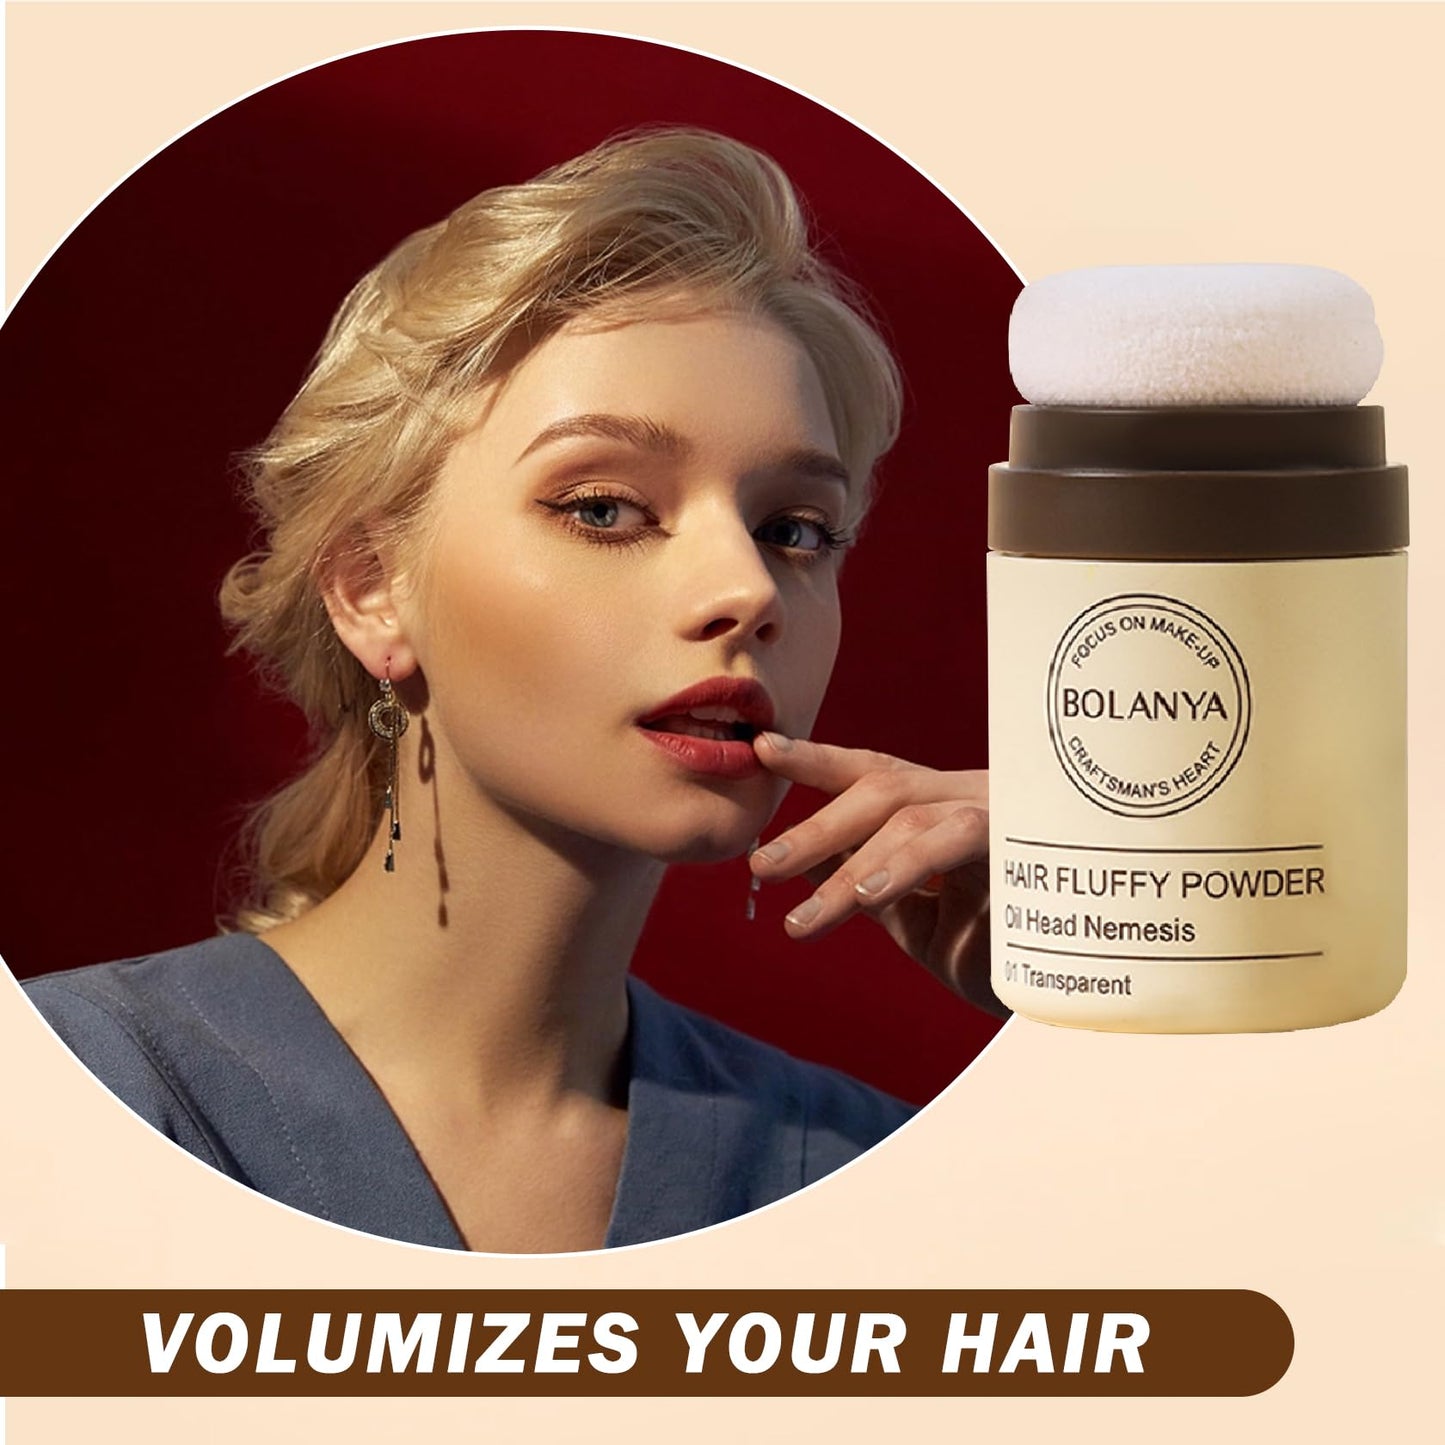 IONSGAKO Dry Shampoo Powder for Women Travel Size Dry Shampoo Powder Dry Shampoo for Dark Hair Oil Control Natural Dry Shampoo Hair Volume Powder